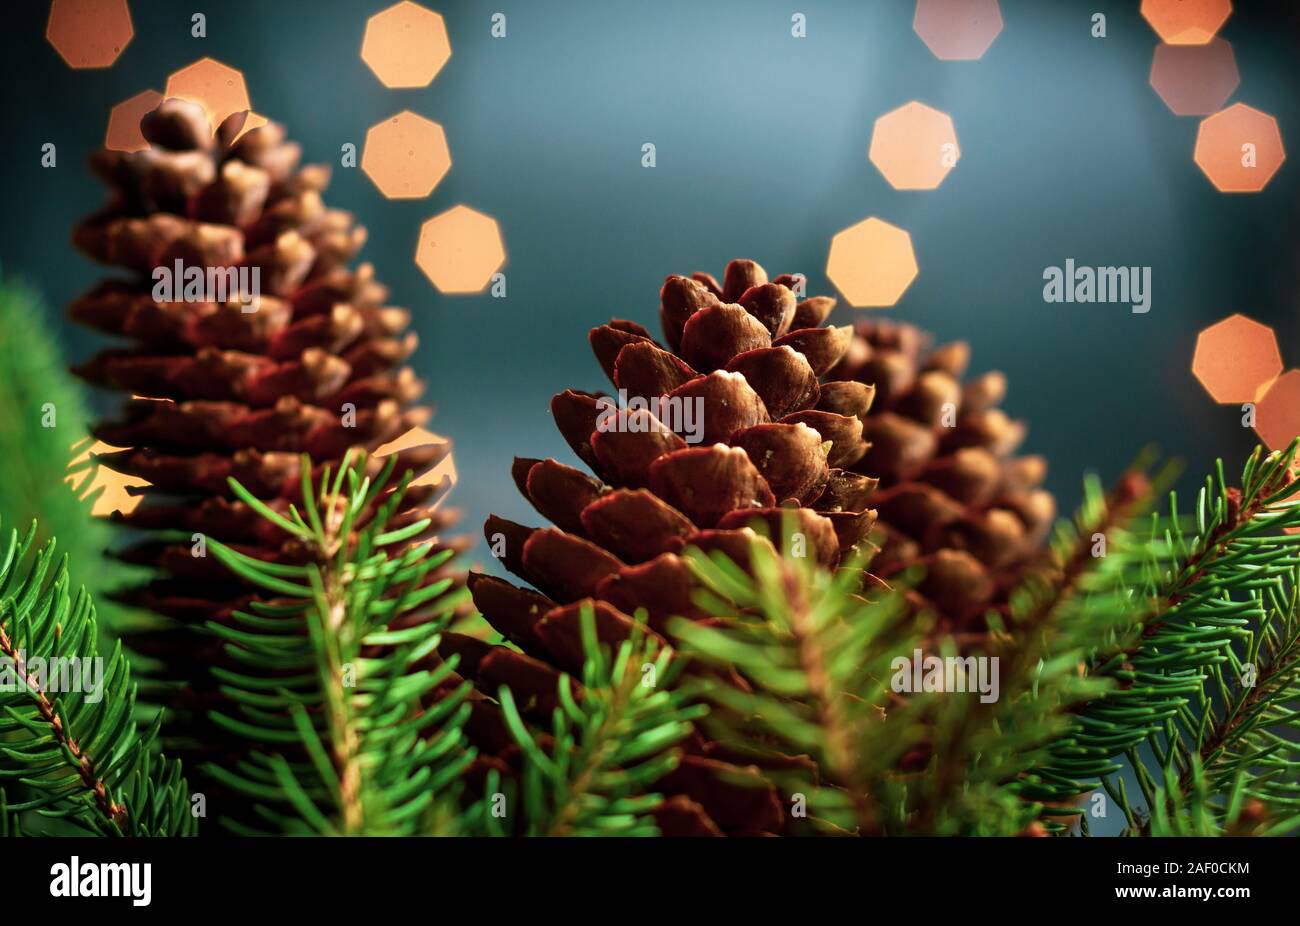 Kiefernzapfen und Tanne in festliche Weihnachten beleuchtete Umgebung Stockfoto